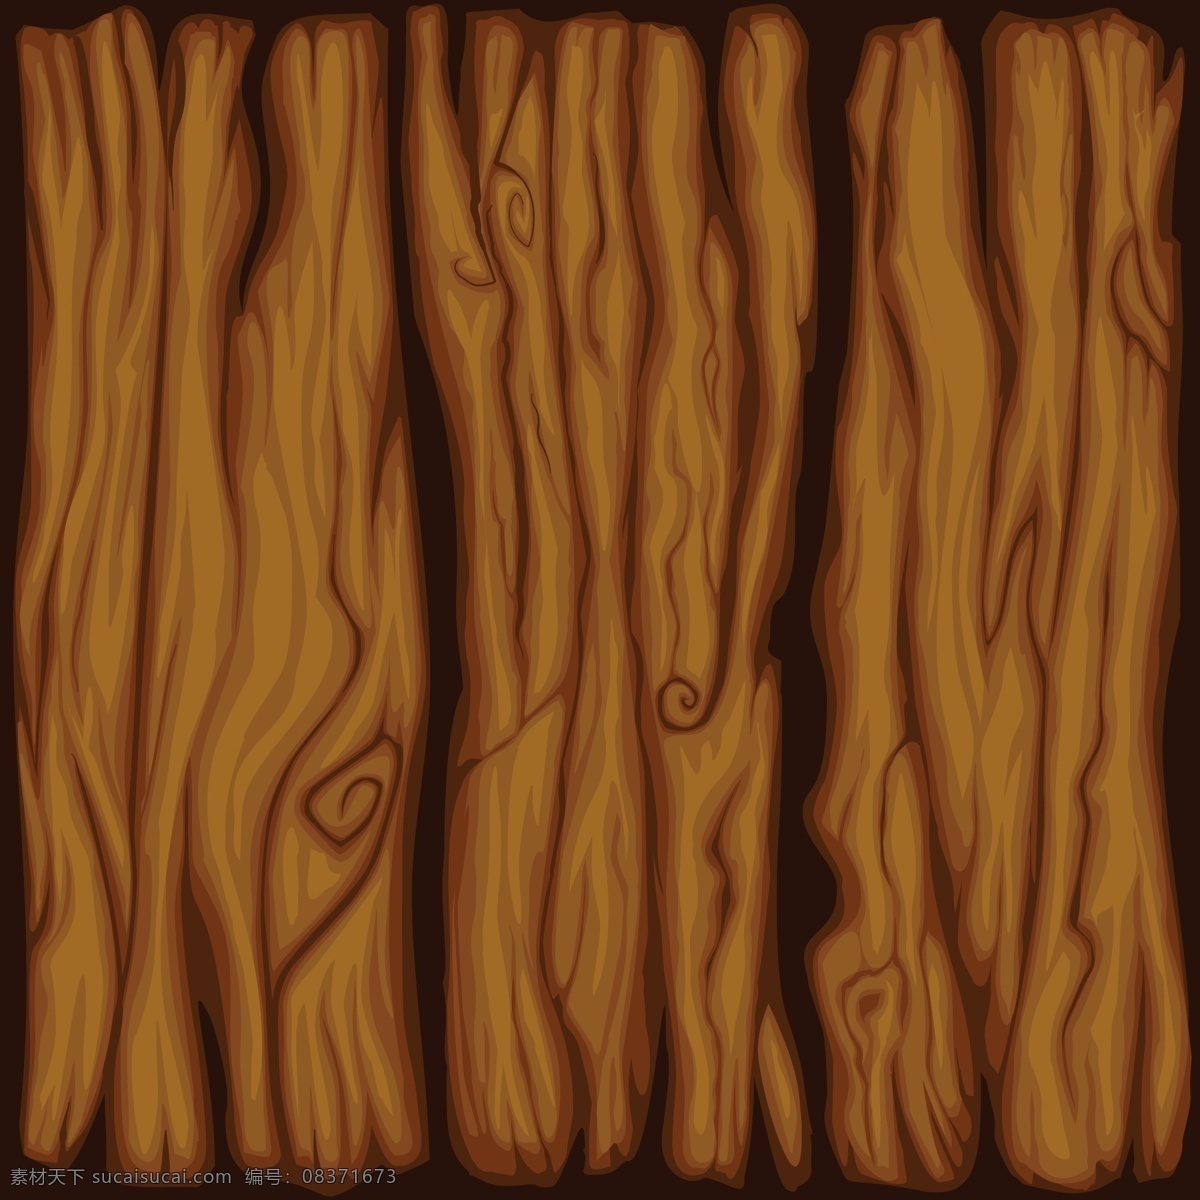 卡通 风格 木材 纹理 背景 抽象 自然 人物 木板 建筑 装饰 绘画 松木 木制 树枝 材料 橡木 树干 软木